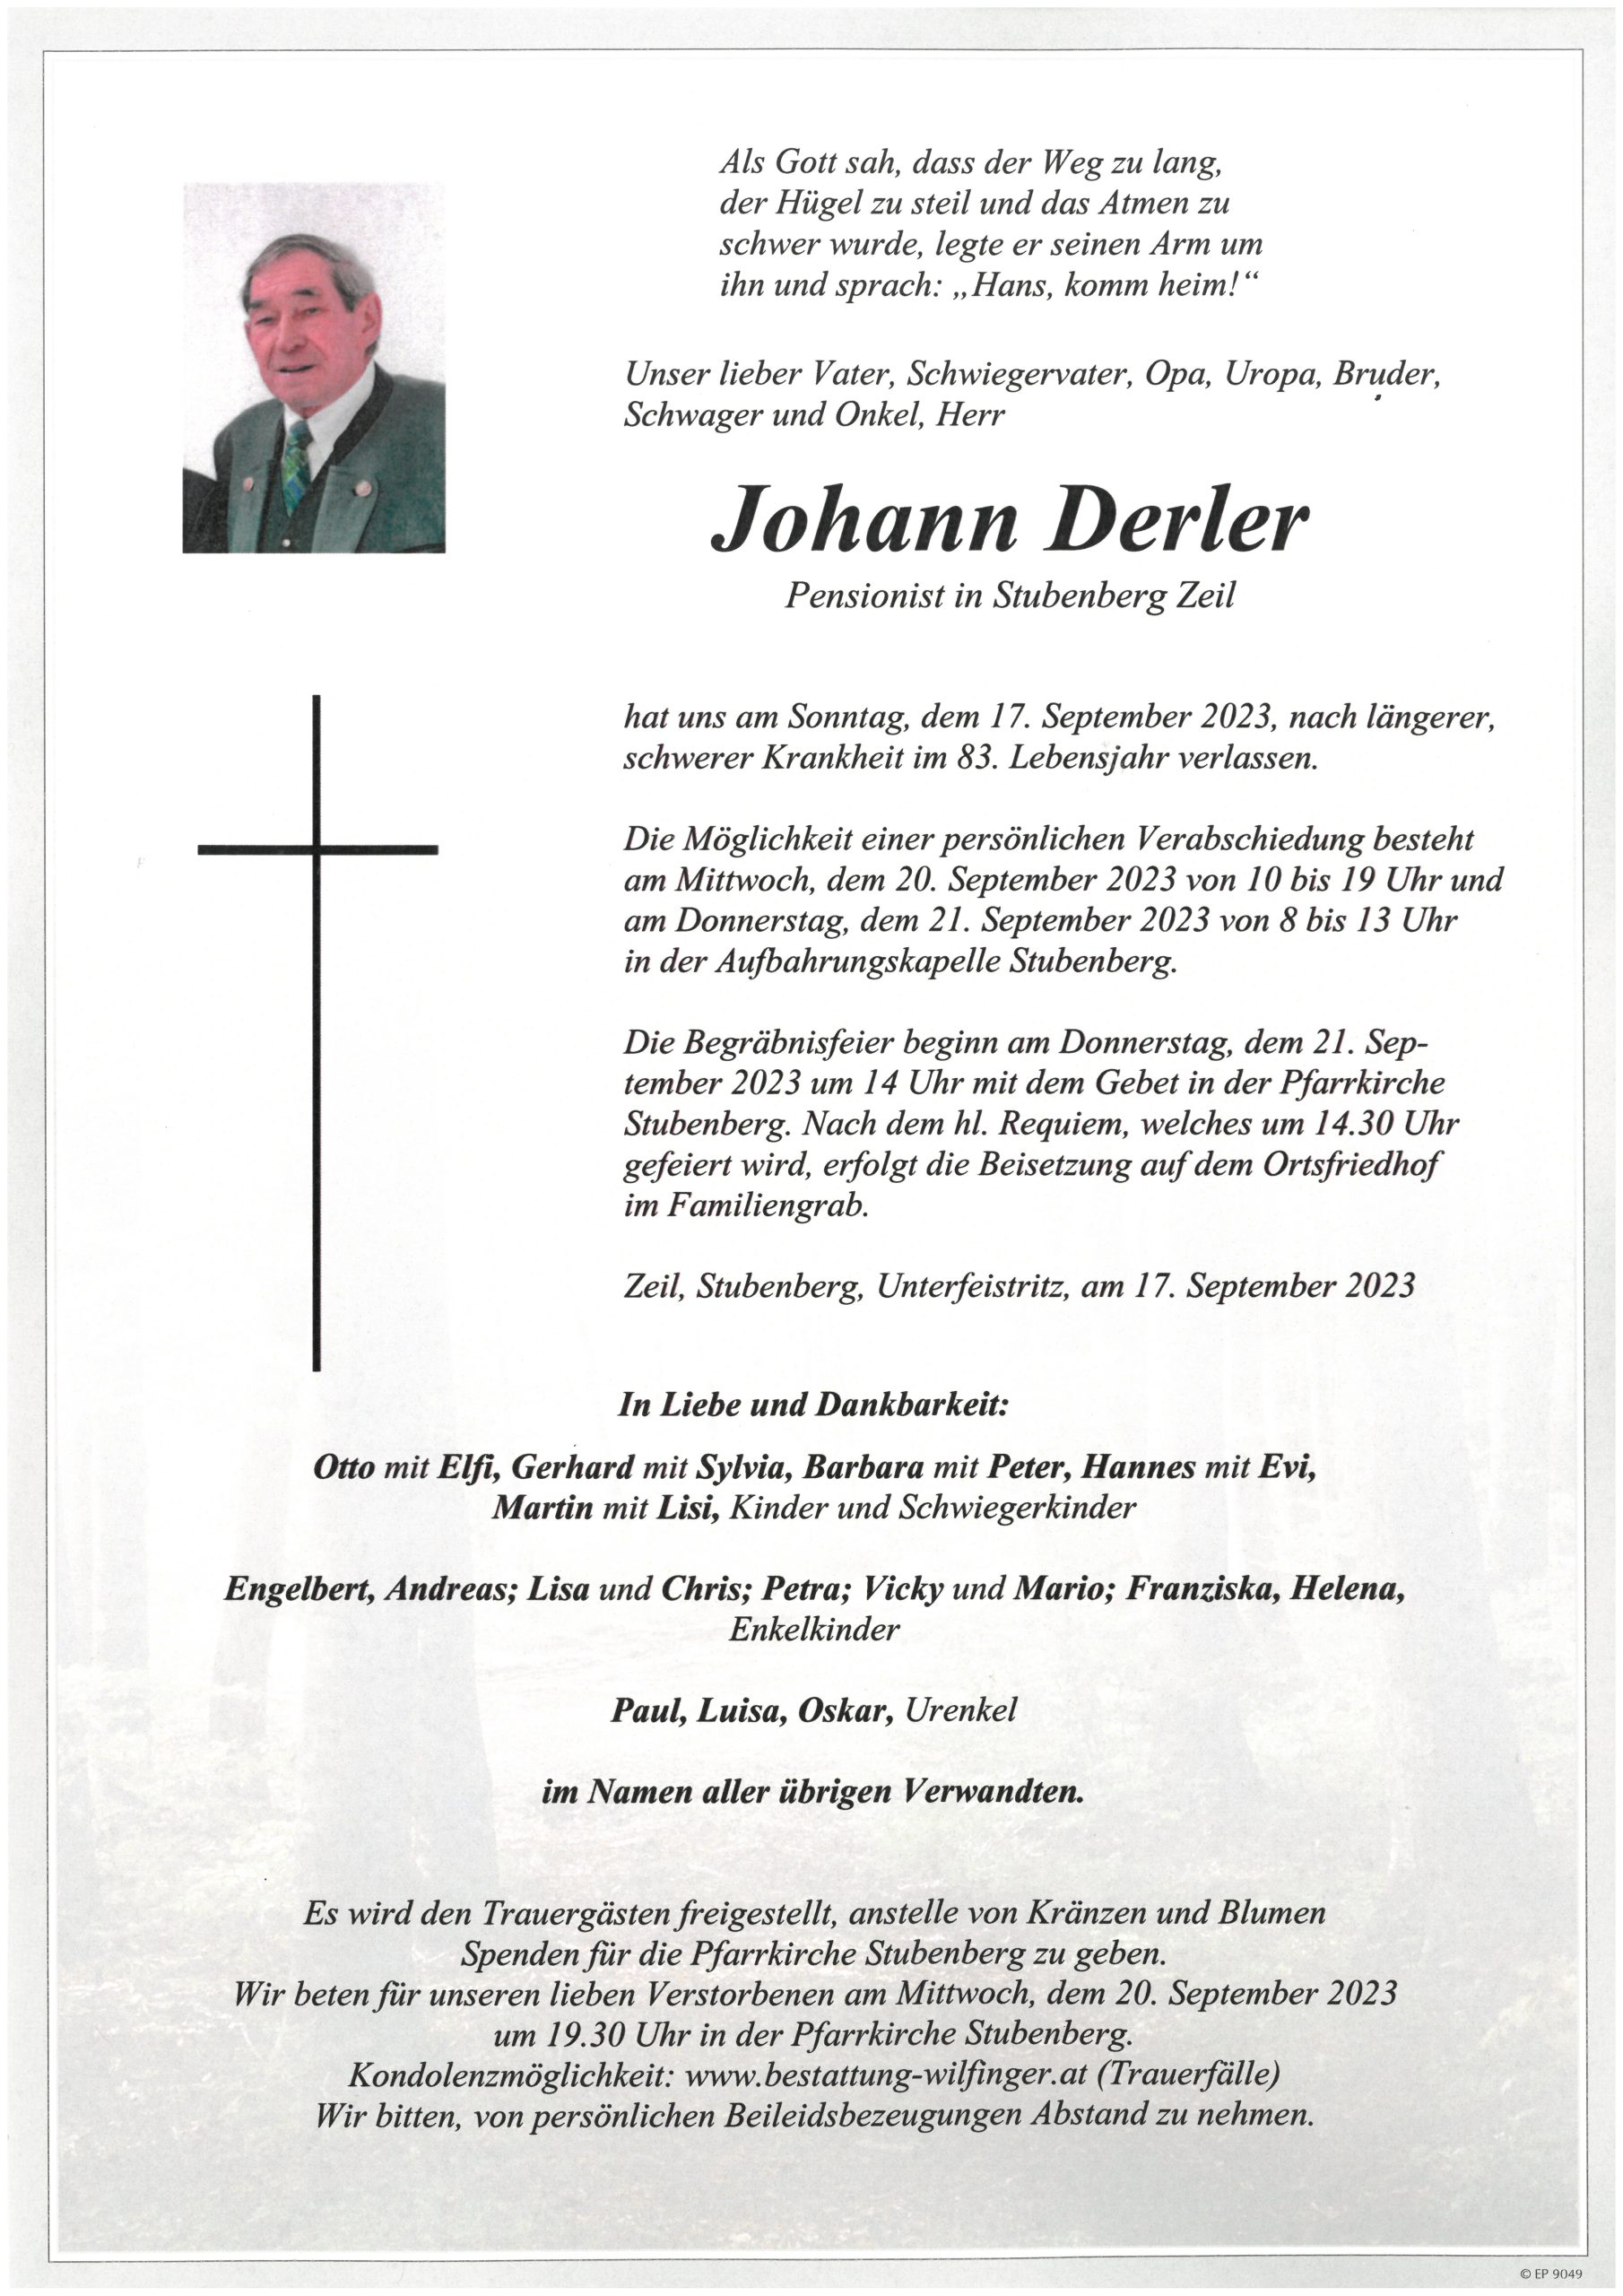 Johann Derler, Stubenberg-Zeil